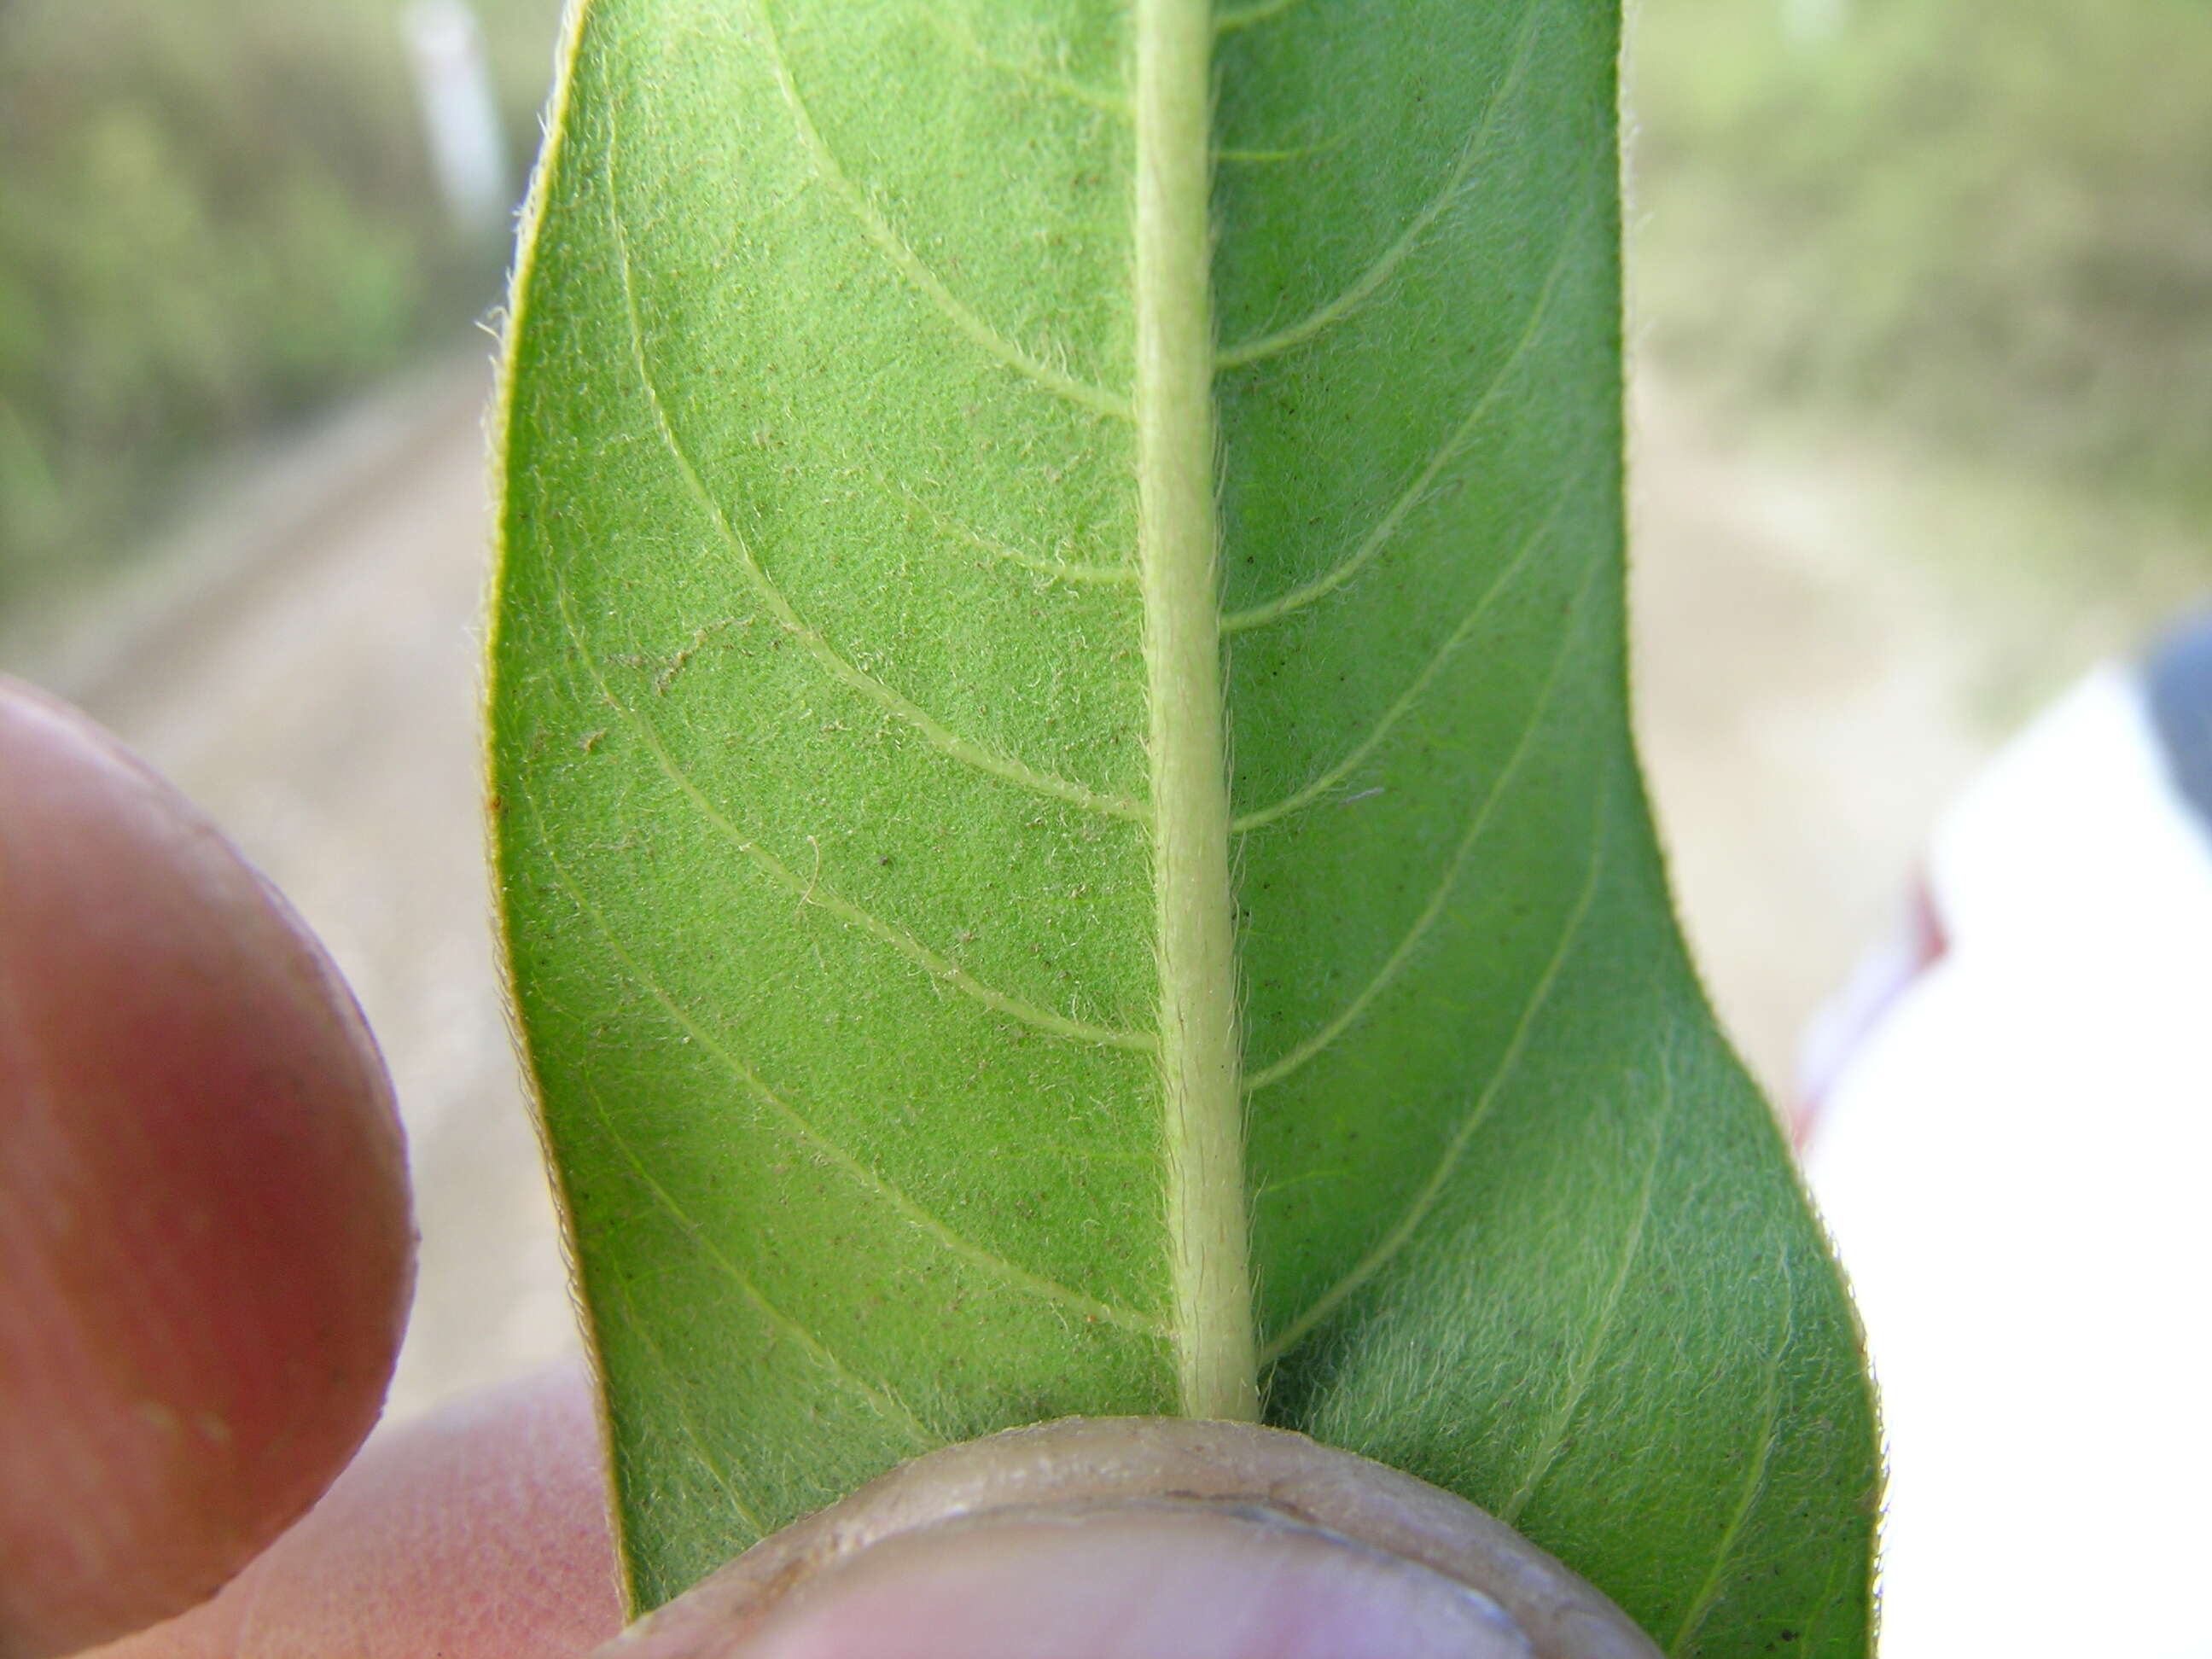 Image of Dock-Leaf Smartweed